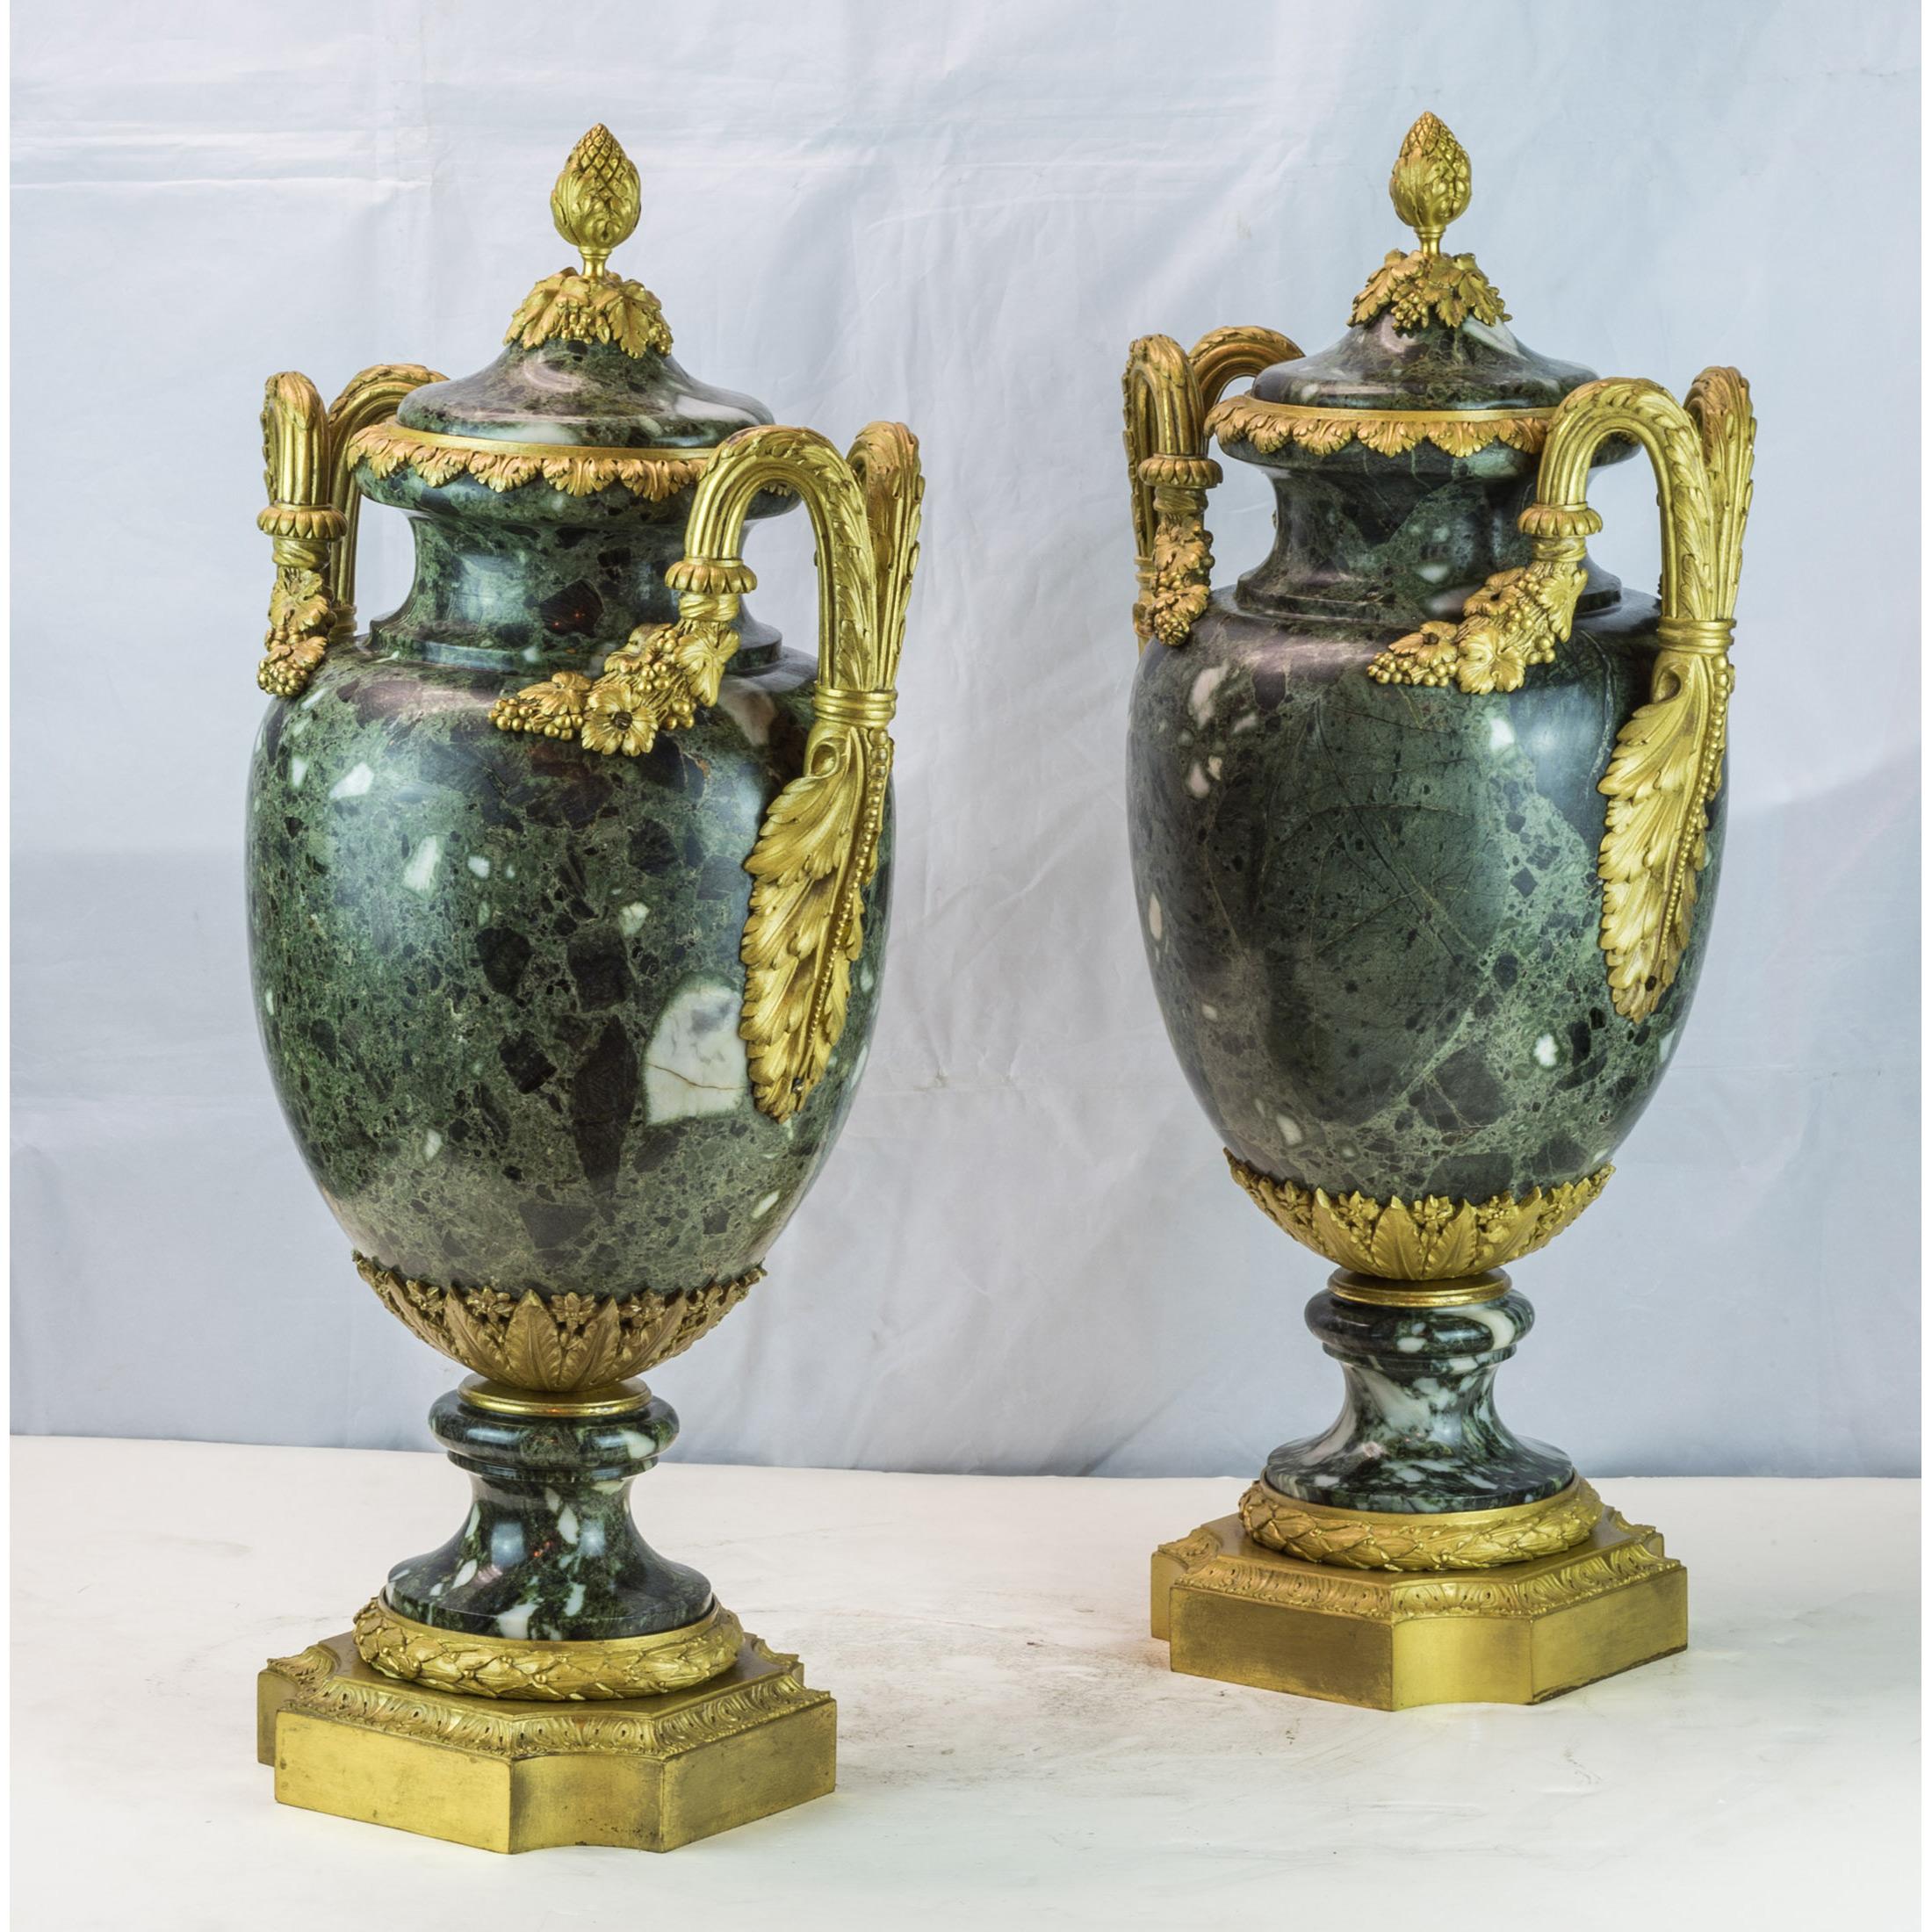 Ein schönes Paar antiker  Vasen aus grünem Marmor und Goldbronze in   Louis XVI-Stil .
Datum: um 1880
Abmessung: 22 Zoll x 11 Zoll.